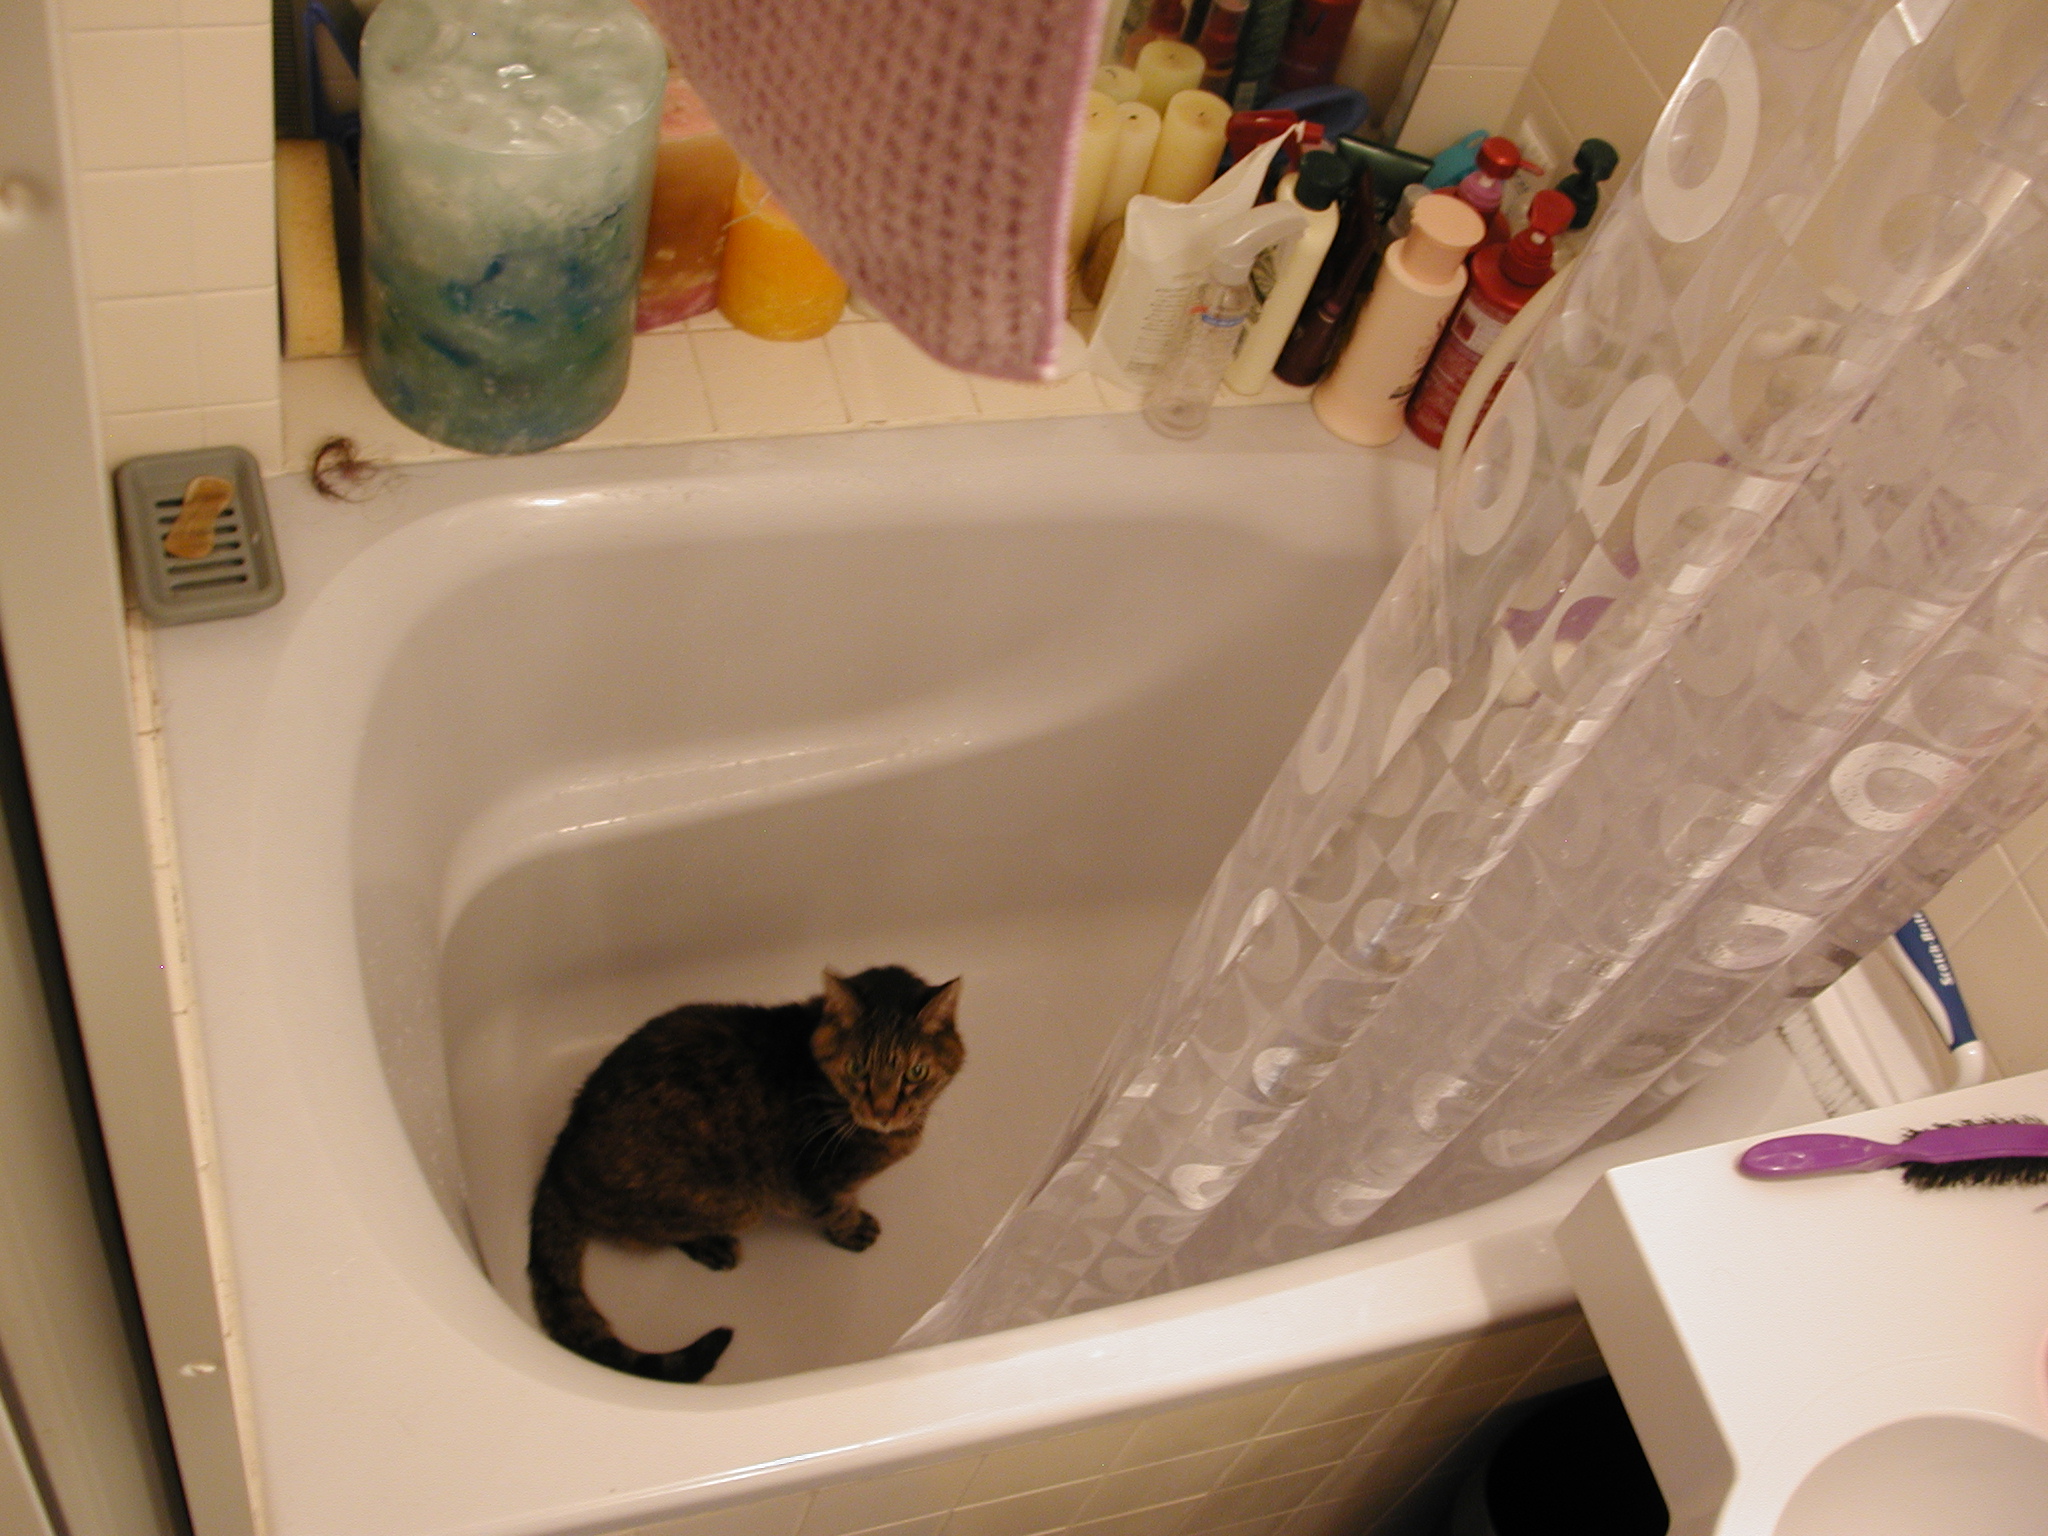 a cat that is sitting in a bathtub